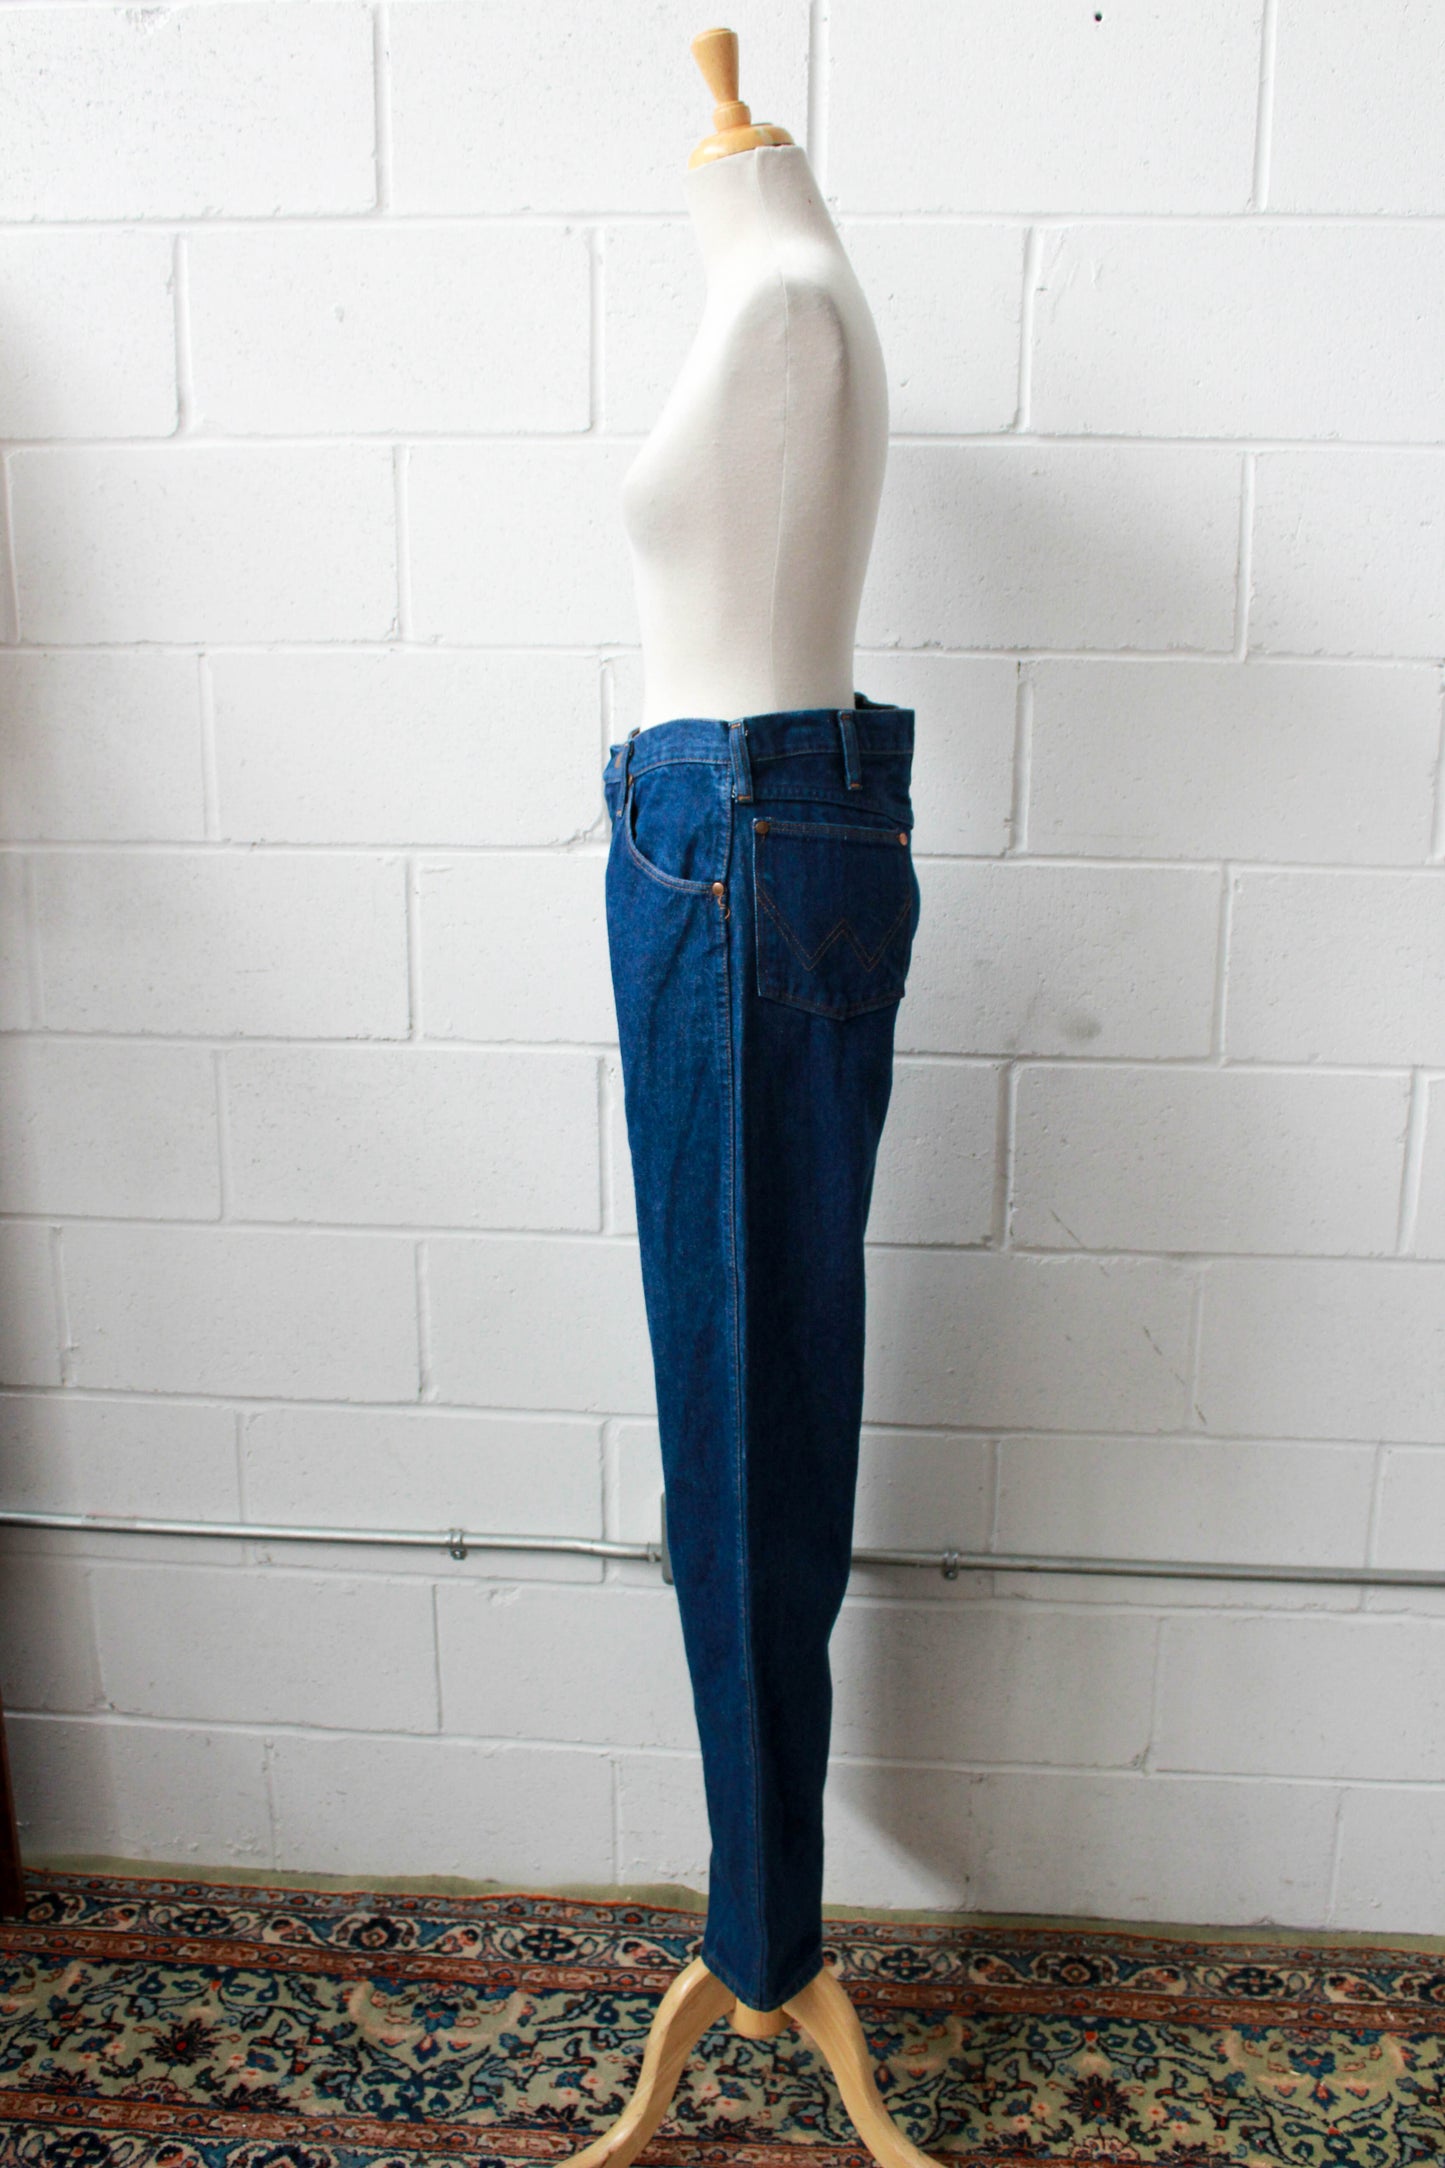 Vintage 1980s Wrangler Dark Wash Denim Jeans, Waist 30"